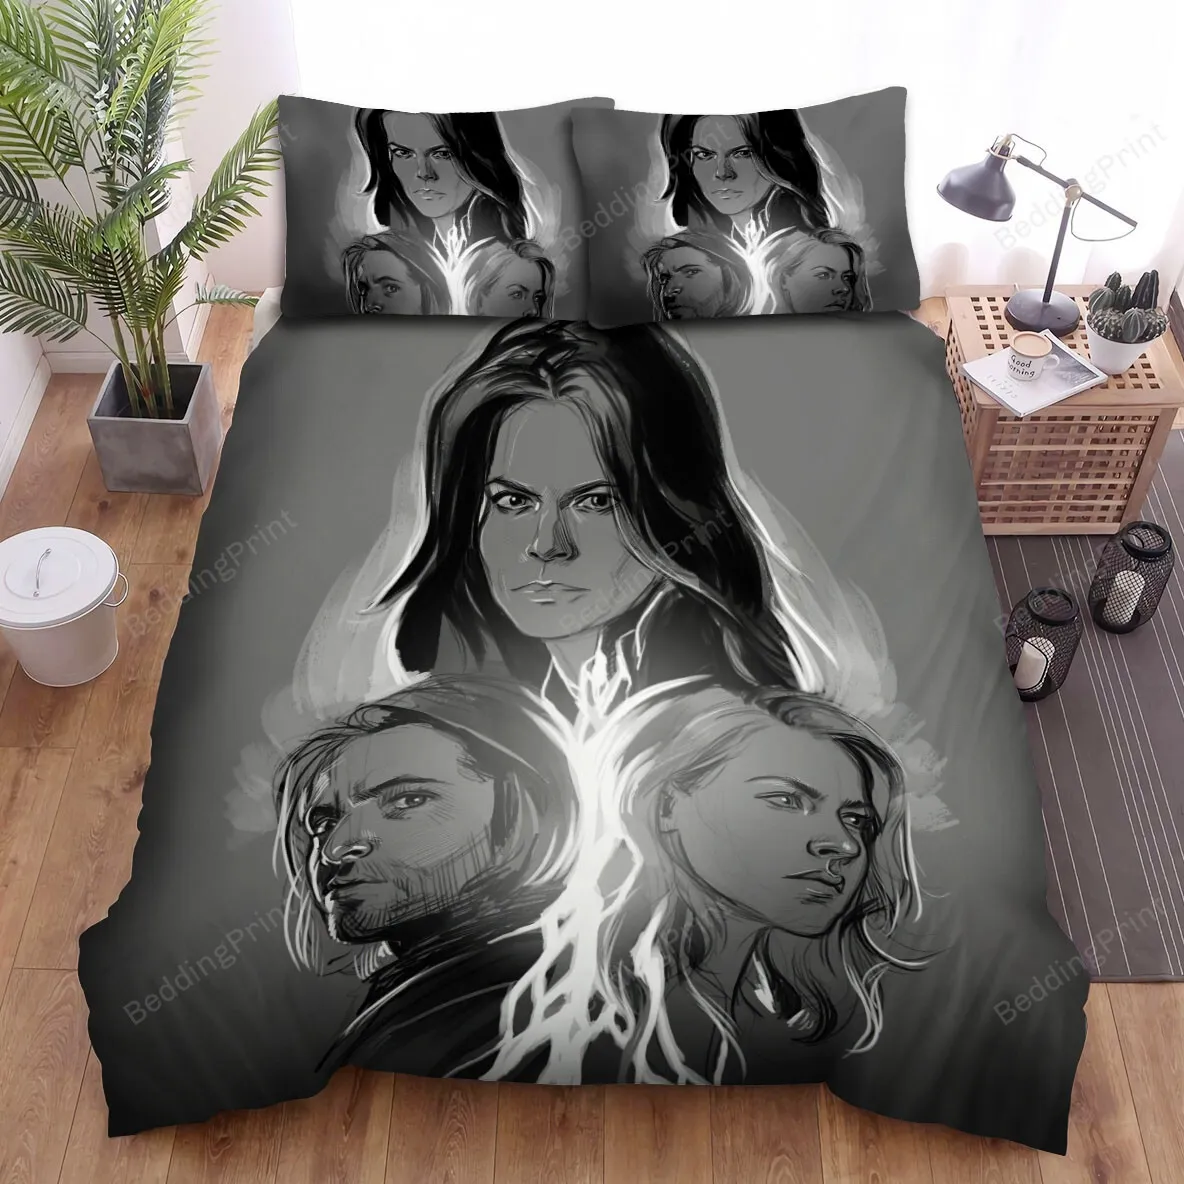 12 Monkeys (20152018) Poster Movie Poster Bed Sheets Spread Comforter Duvet Cover Bedding Sets Ver 1